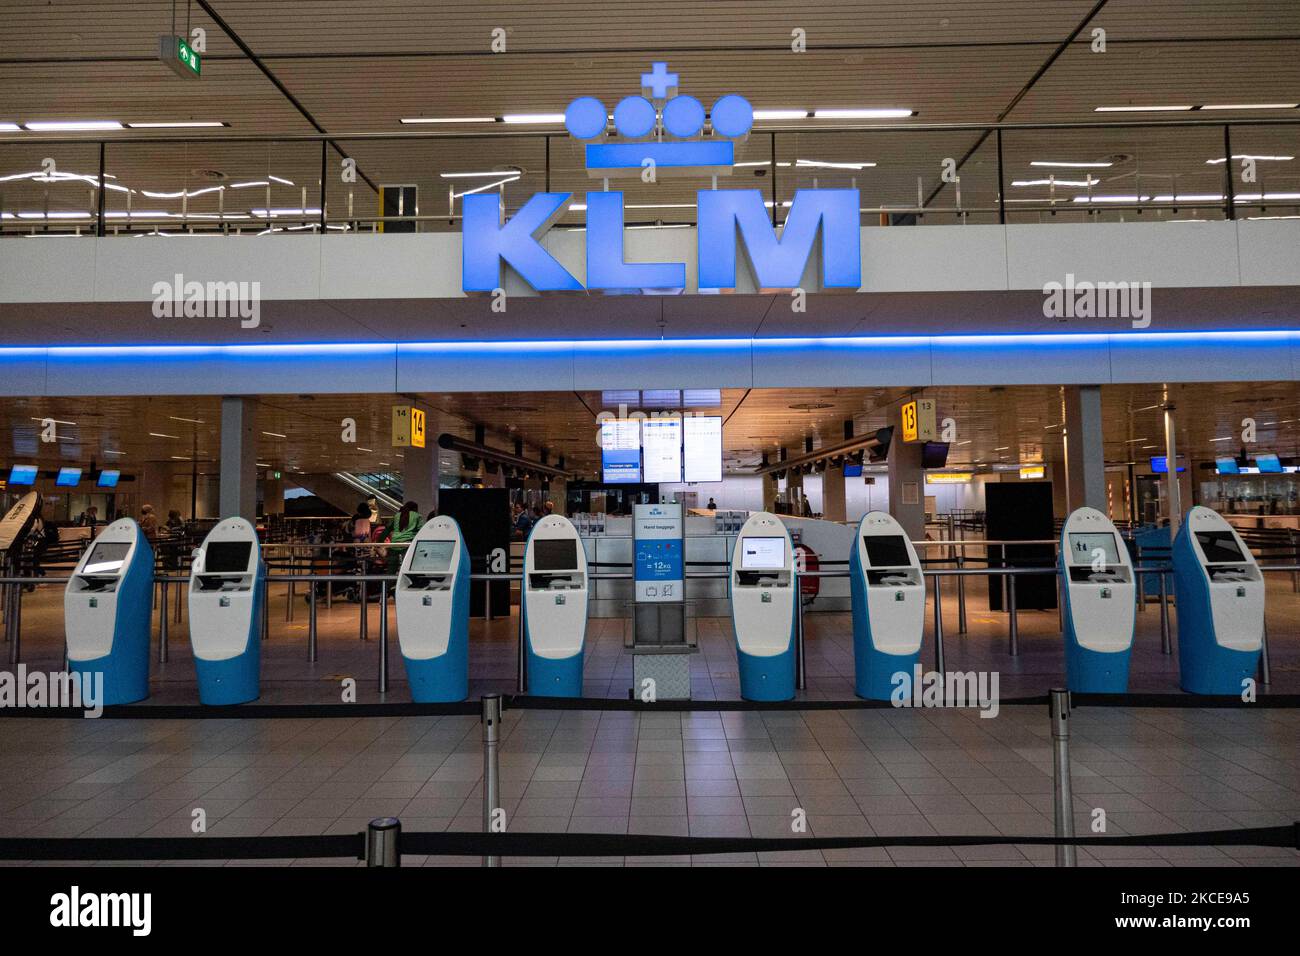 KLM-Check-in-Schalter, Check-in-Automaten im Terminal des internationalen Flughafens Amsterdam Schiphol während der Pandemie Covid-19. Die Anzahl der Passagiere und die Crew tragen Schutzausrüstung wie die obligatorischen Gesichtsmasken und Handschuhe, um die Ausbreitung des Coronavirus zu vermeiden. Die Zahl der Passagiere im Weltflug sank aufgrund der Reisebeschränkungen, Sicherheitsmaßnahmen wie Sperren, Quarantäne, PCR und Schnelltests vor den Flügen während der Ära der Coronavirus-Pandemie Covid-19, die die Luft- und Reisebranche schwer getroffen hatte. Am Stockfoto